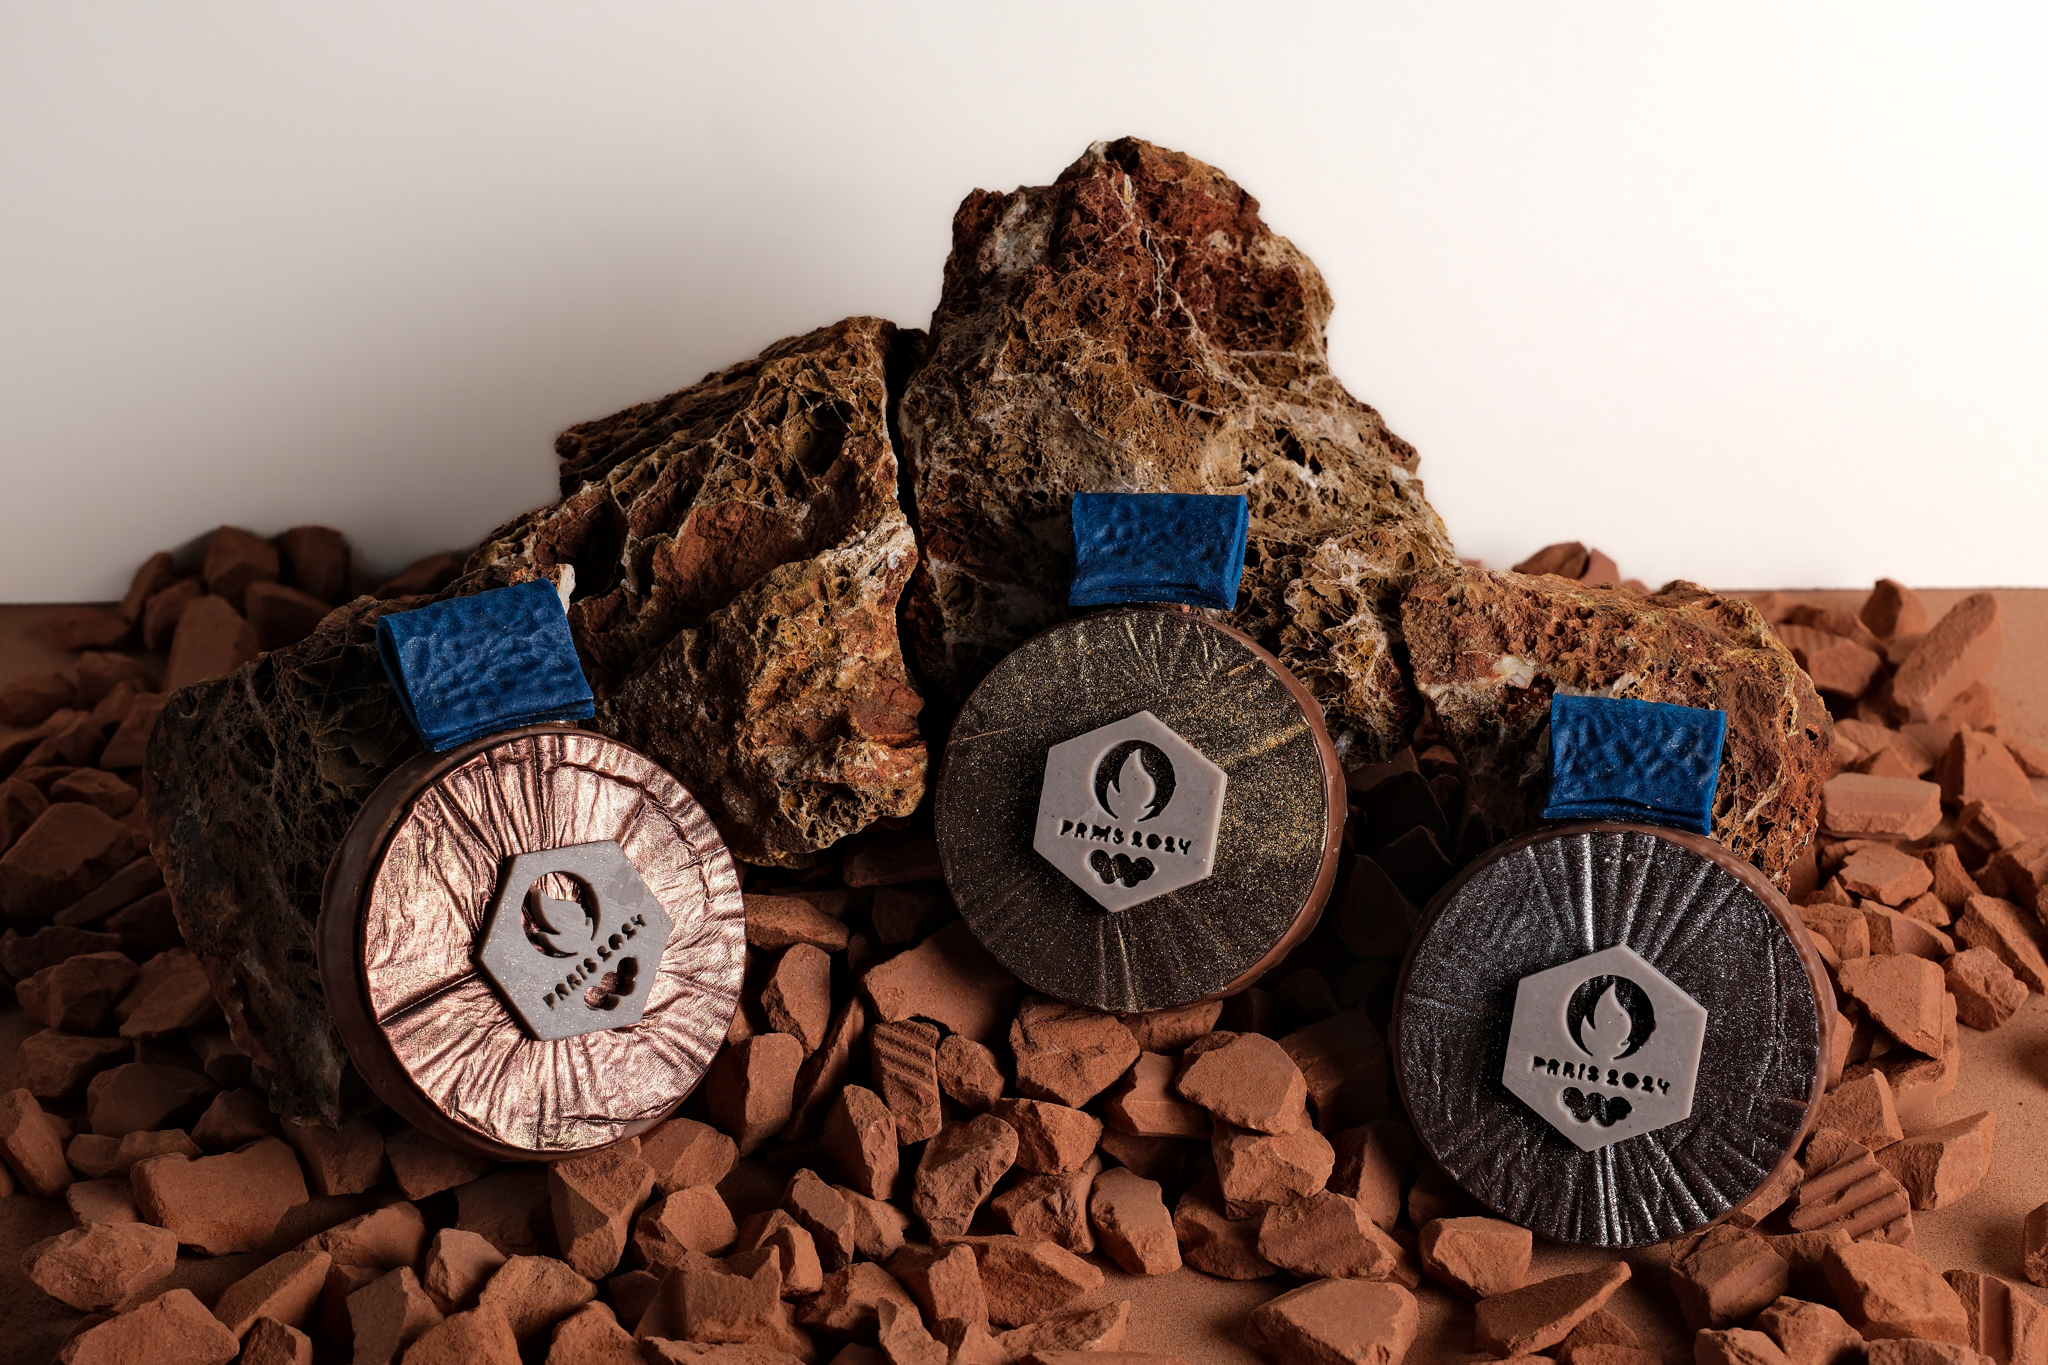 médailles au pralné et chocolat JO Paris 2024 Aix-en-Provence